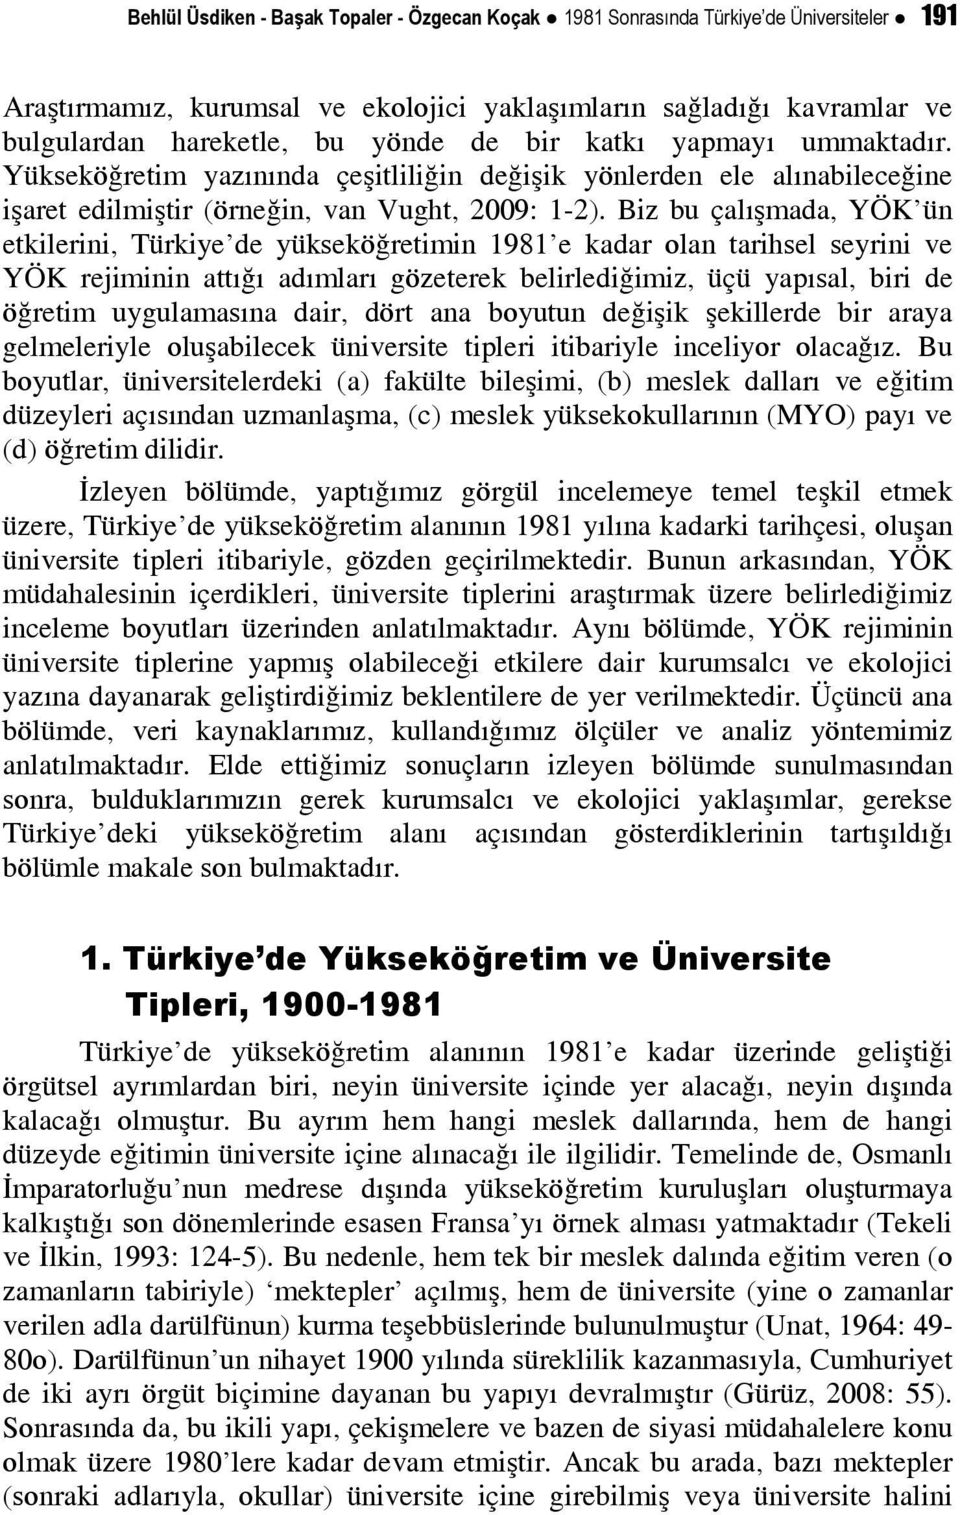 Biz bu çalışmada, YÖK ün etkilerini, Türkiye de yükseköğretimin 1981 e kadar olan tarihsel seyrini ve YÖK rejiminin attığı adımları gözeterek belirlediğimiz, üçü yapısal, biri de öğretim uygulamasına